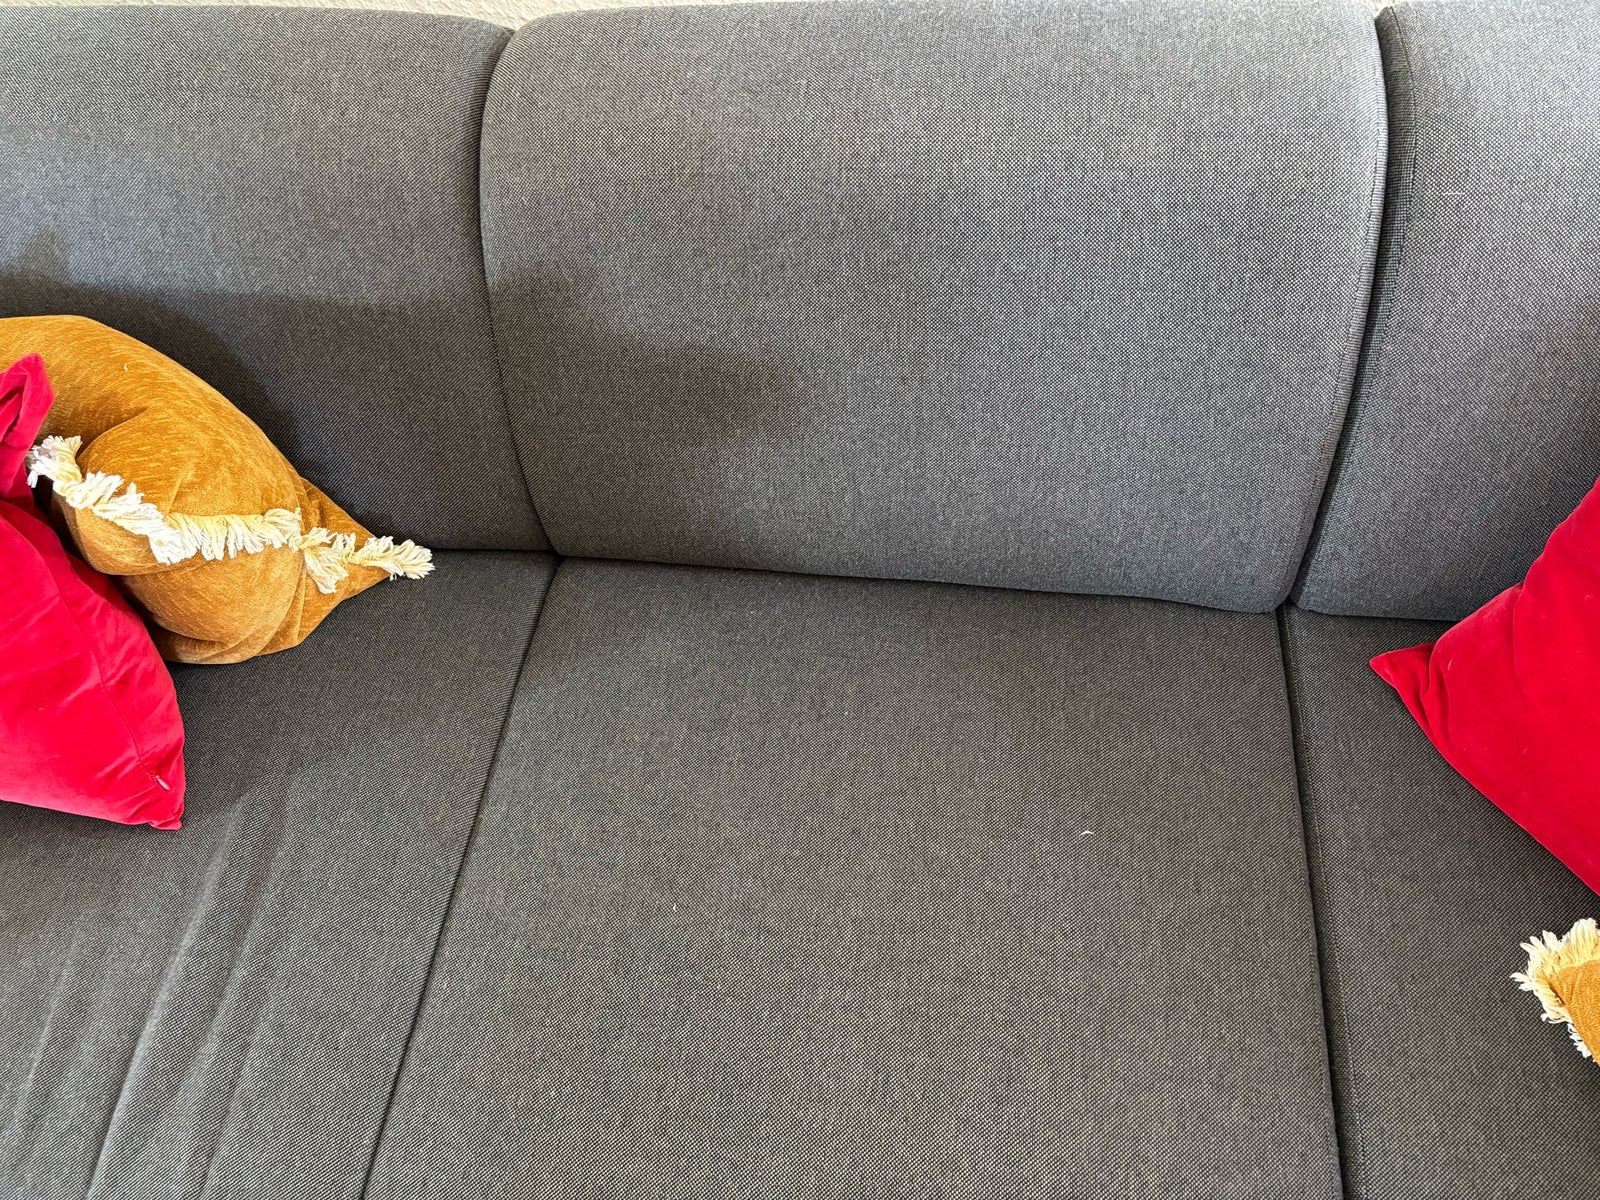 Flytteslag ! Brugt sofa sælges til spotpris